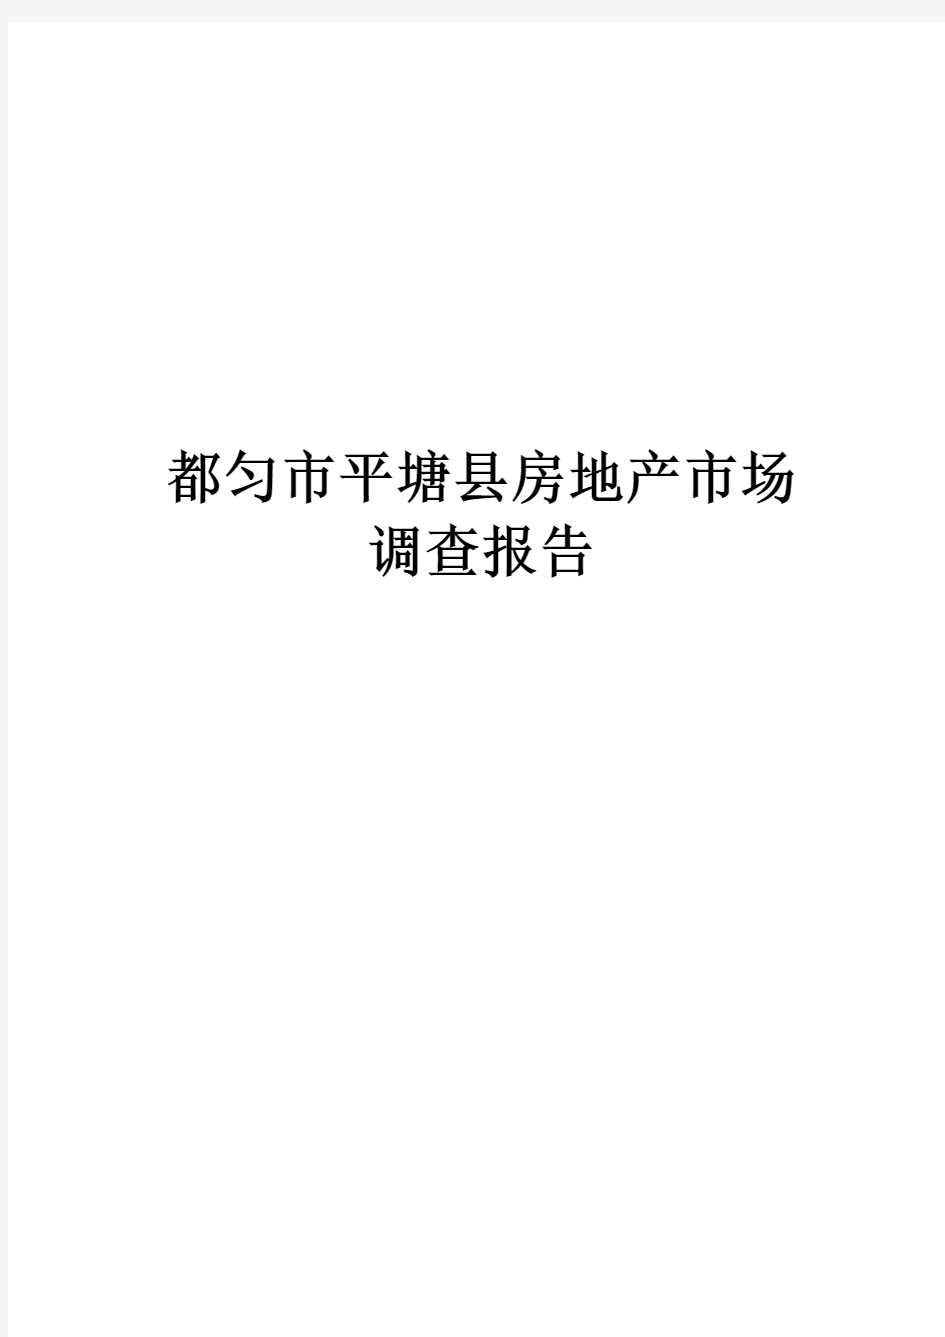 都匀市平塘县房地产市场调查报告(1)2014-4-16 10.42.23